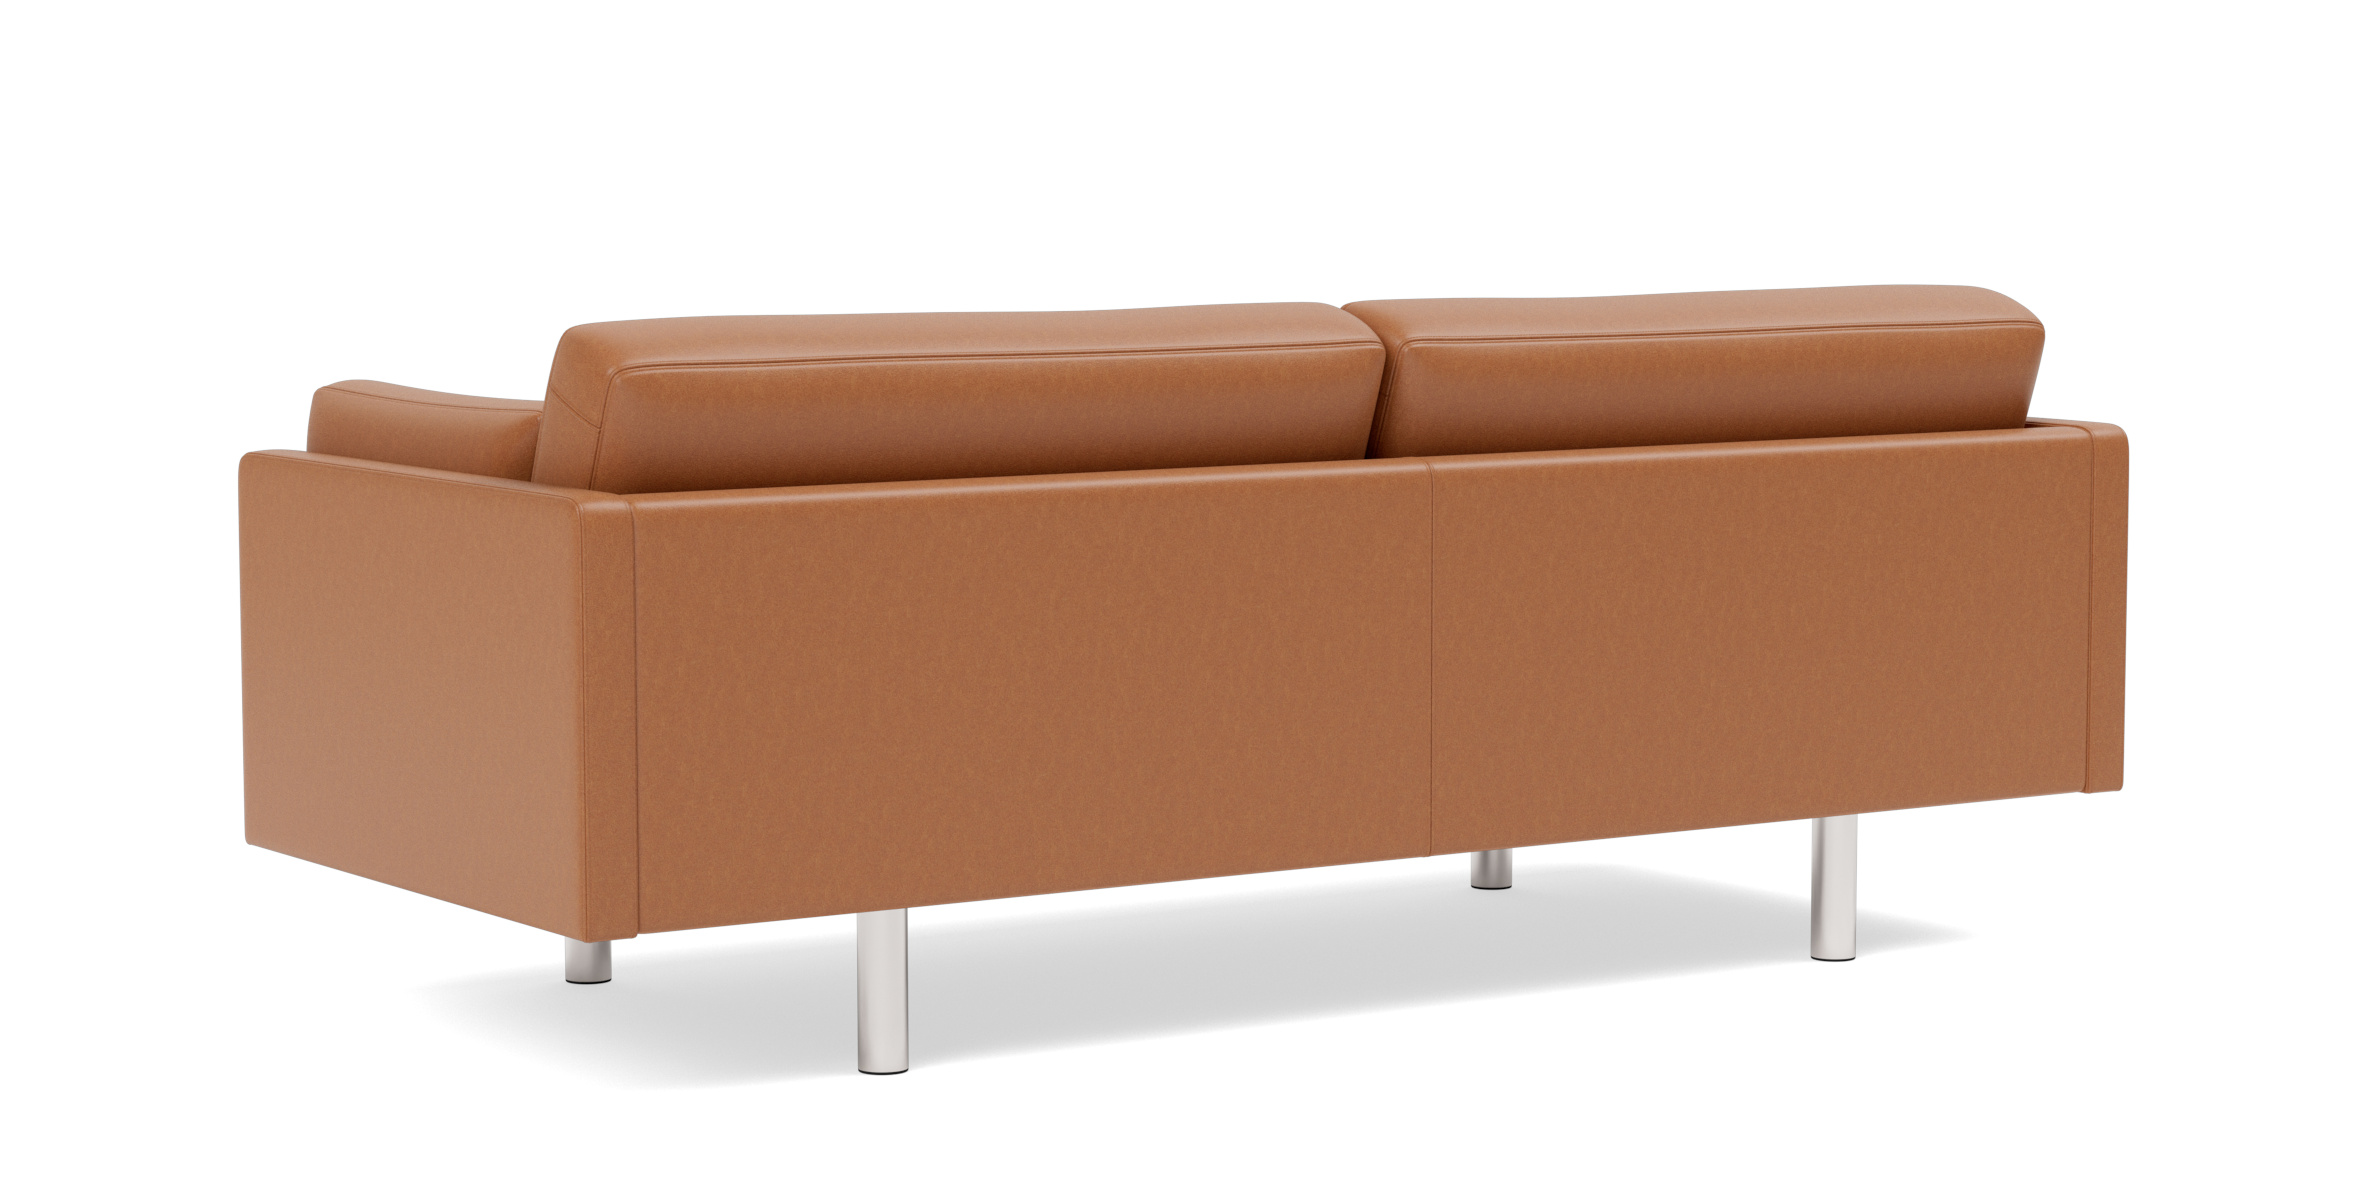 EJ220 Sofa 2-Sitzer, 100 cm, brushed chrom / leder omni 301 schwarz